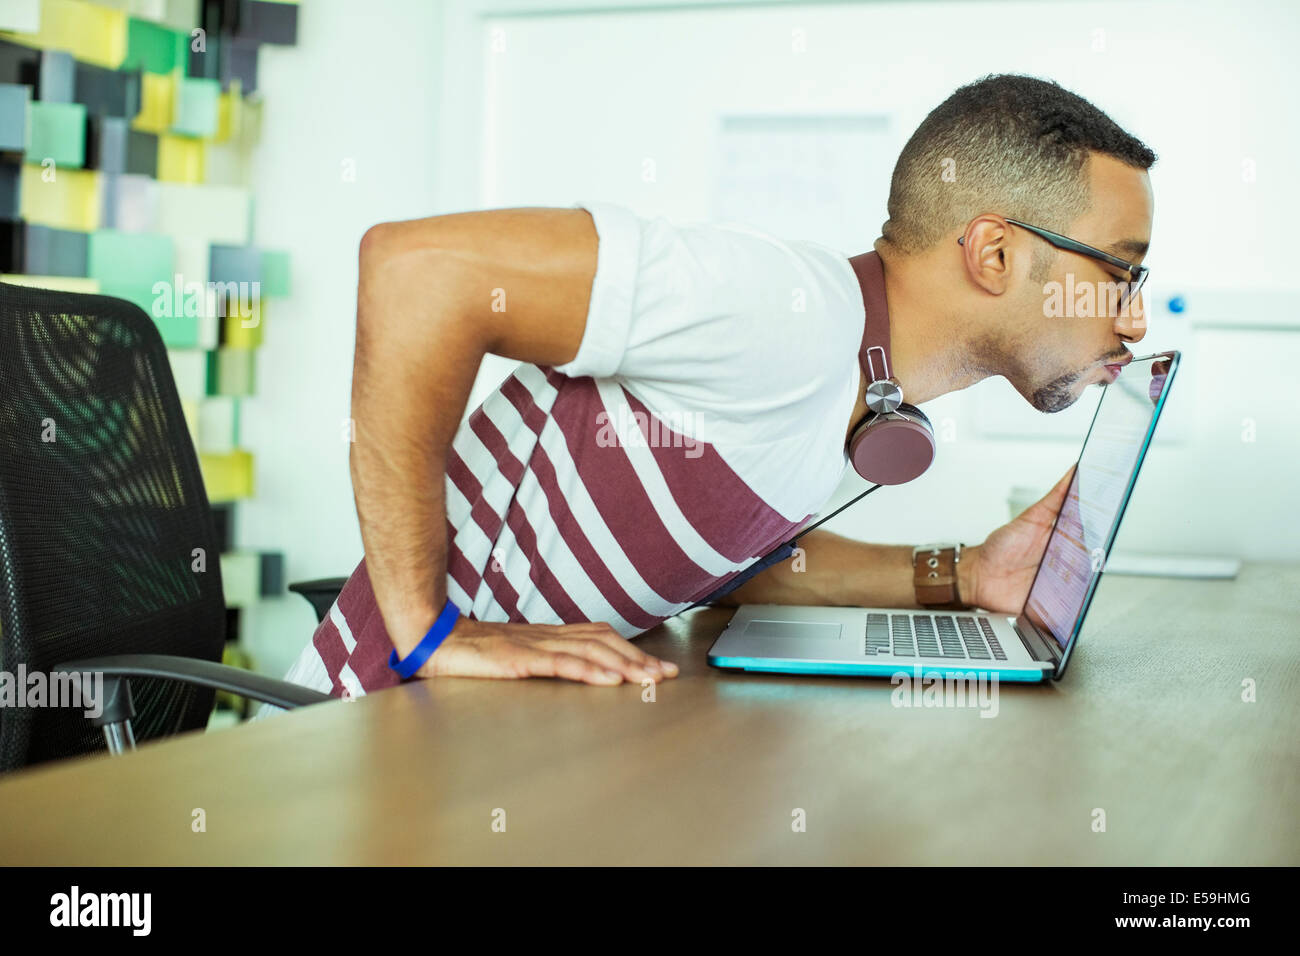 Hombre bese laptop en la oficina Foto de stock